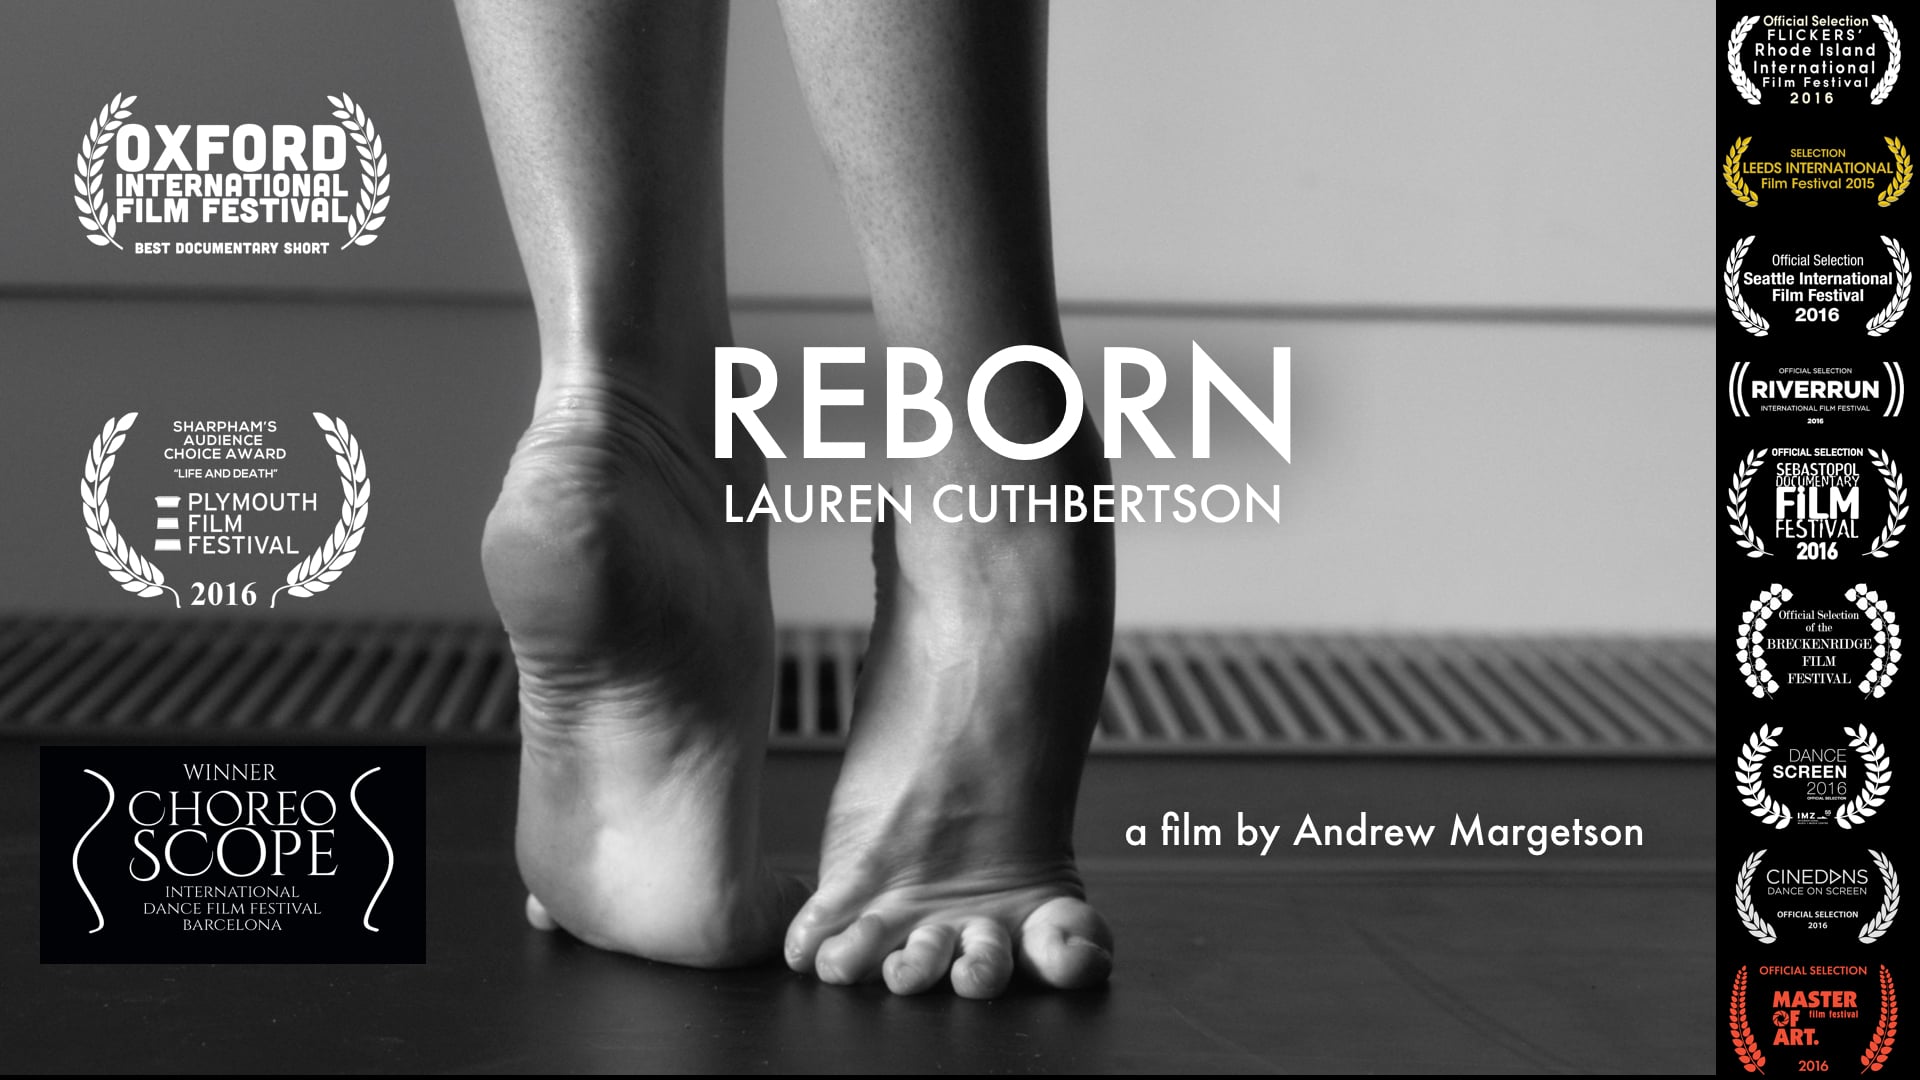 Reborn: Lauren Cuthbertson